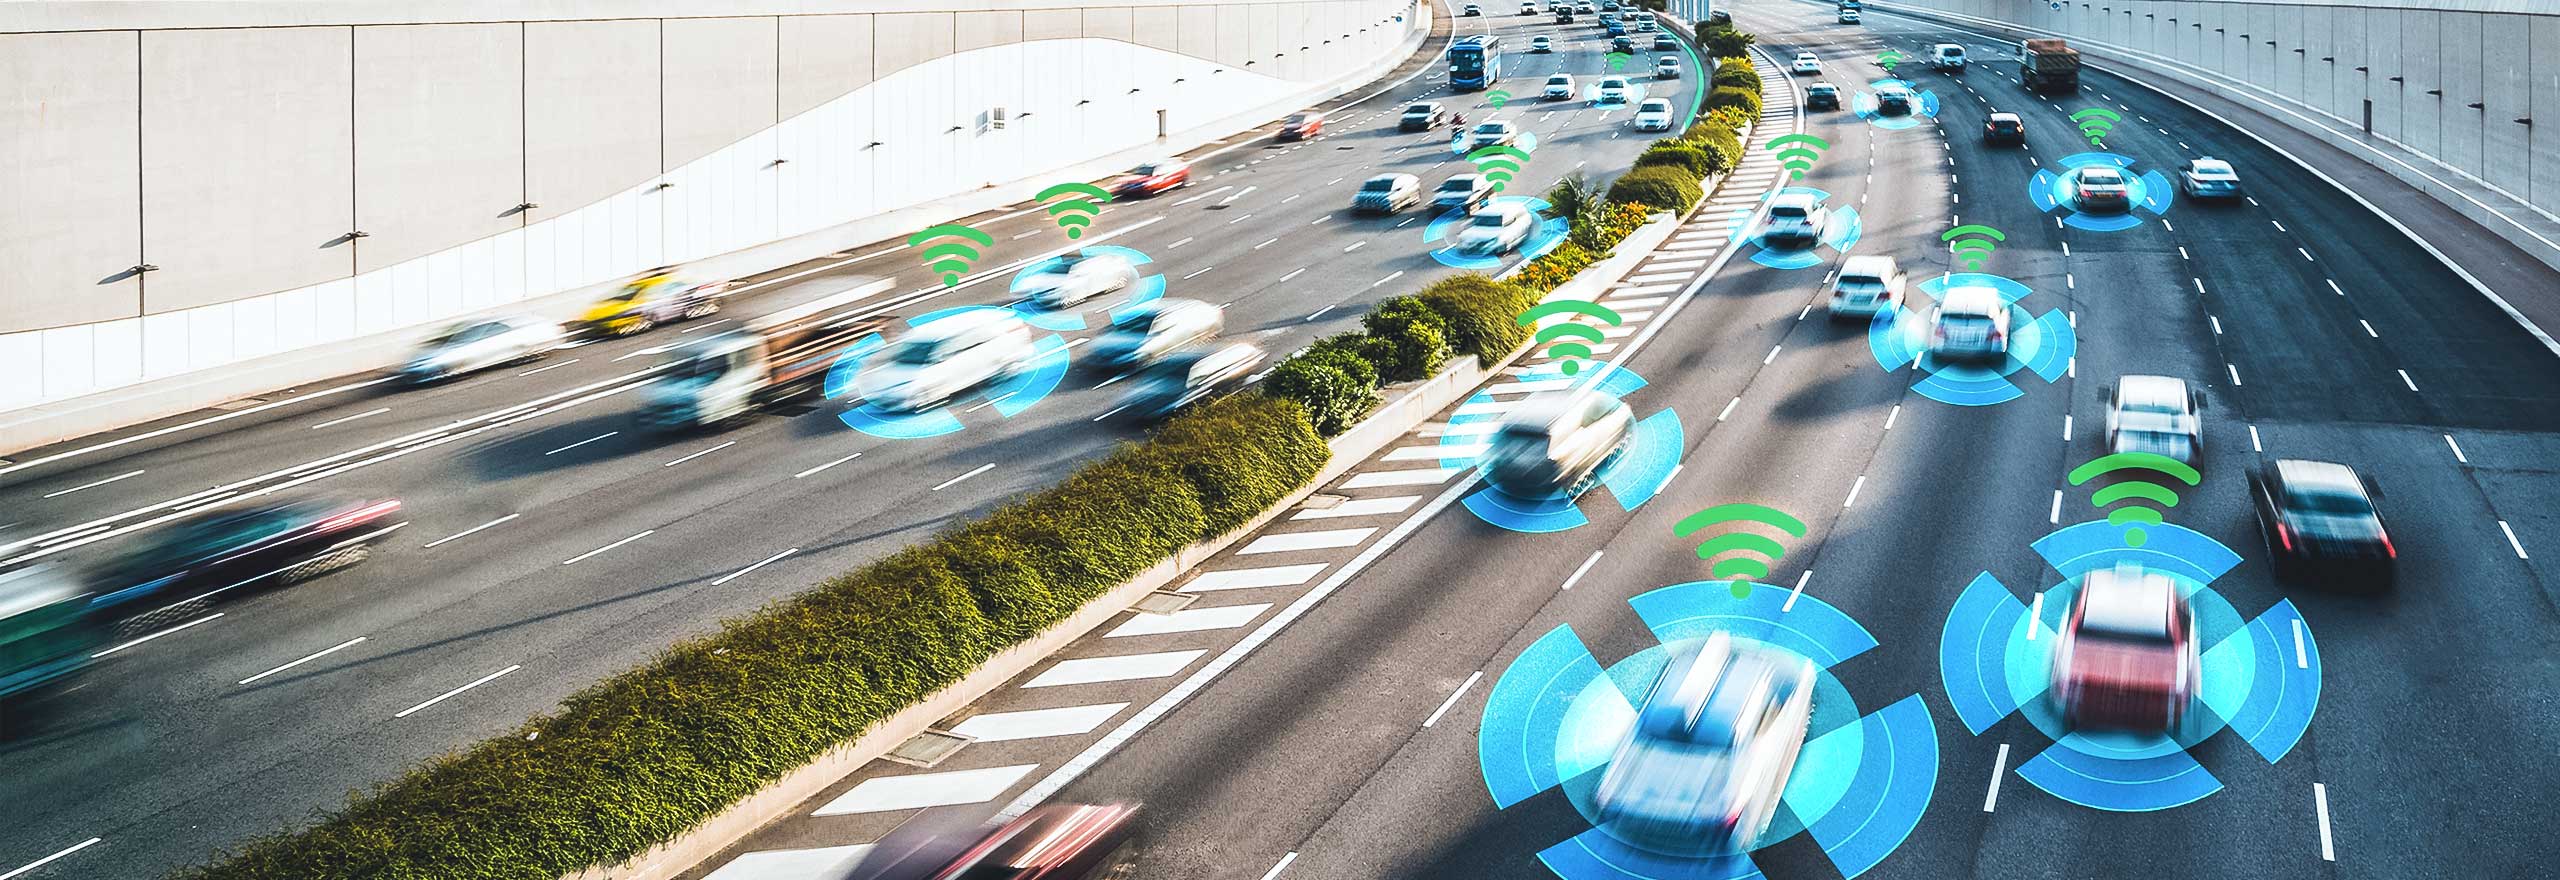 Autos auf Autobahnen, die von Hexagons autonomen Fahrzeugwahrnehmungslösungen analysiert werden